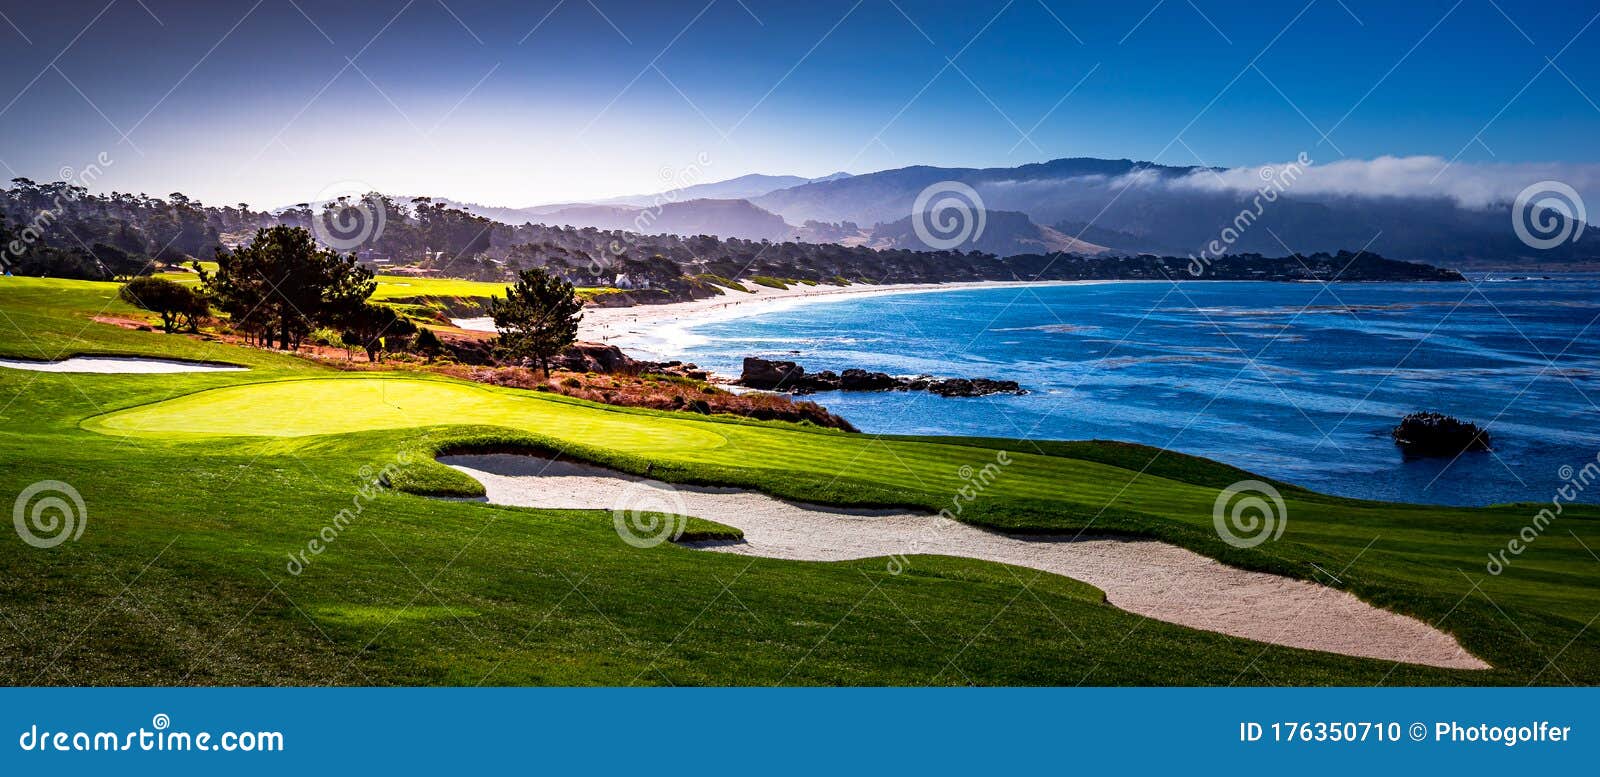 pebble beach golf course, monterey, california, usa